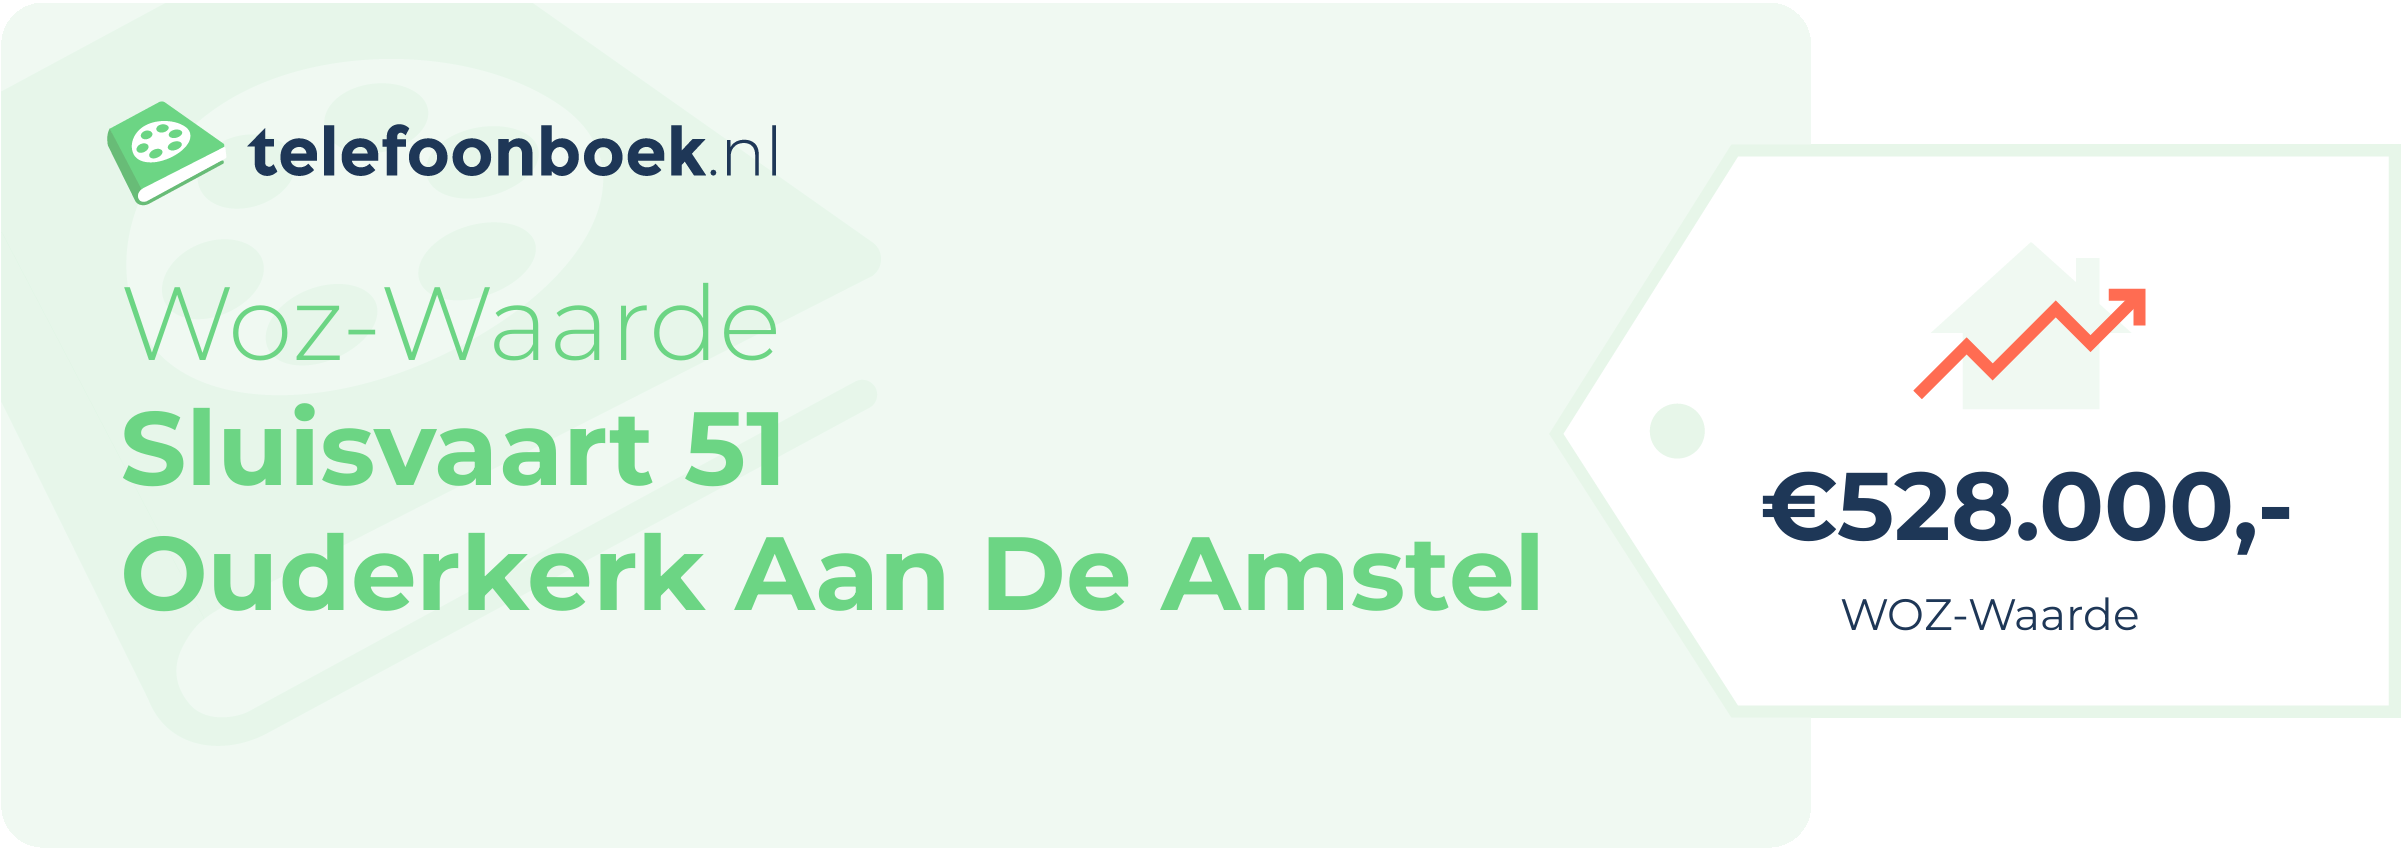 WOZ-waarde Sluisvaart 51 Ouderkerk Aan De Amstel